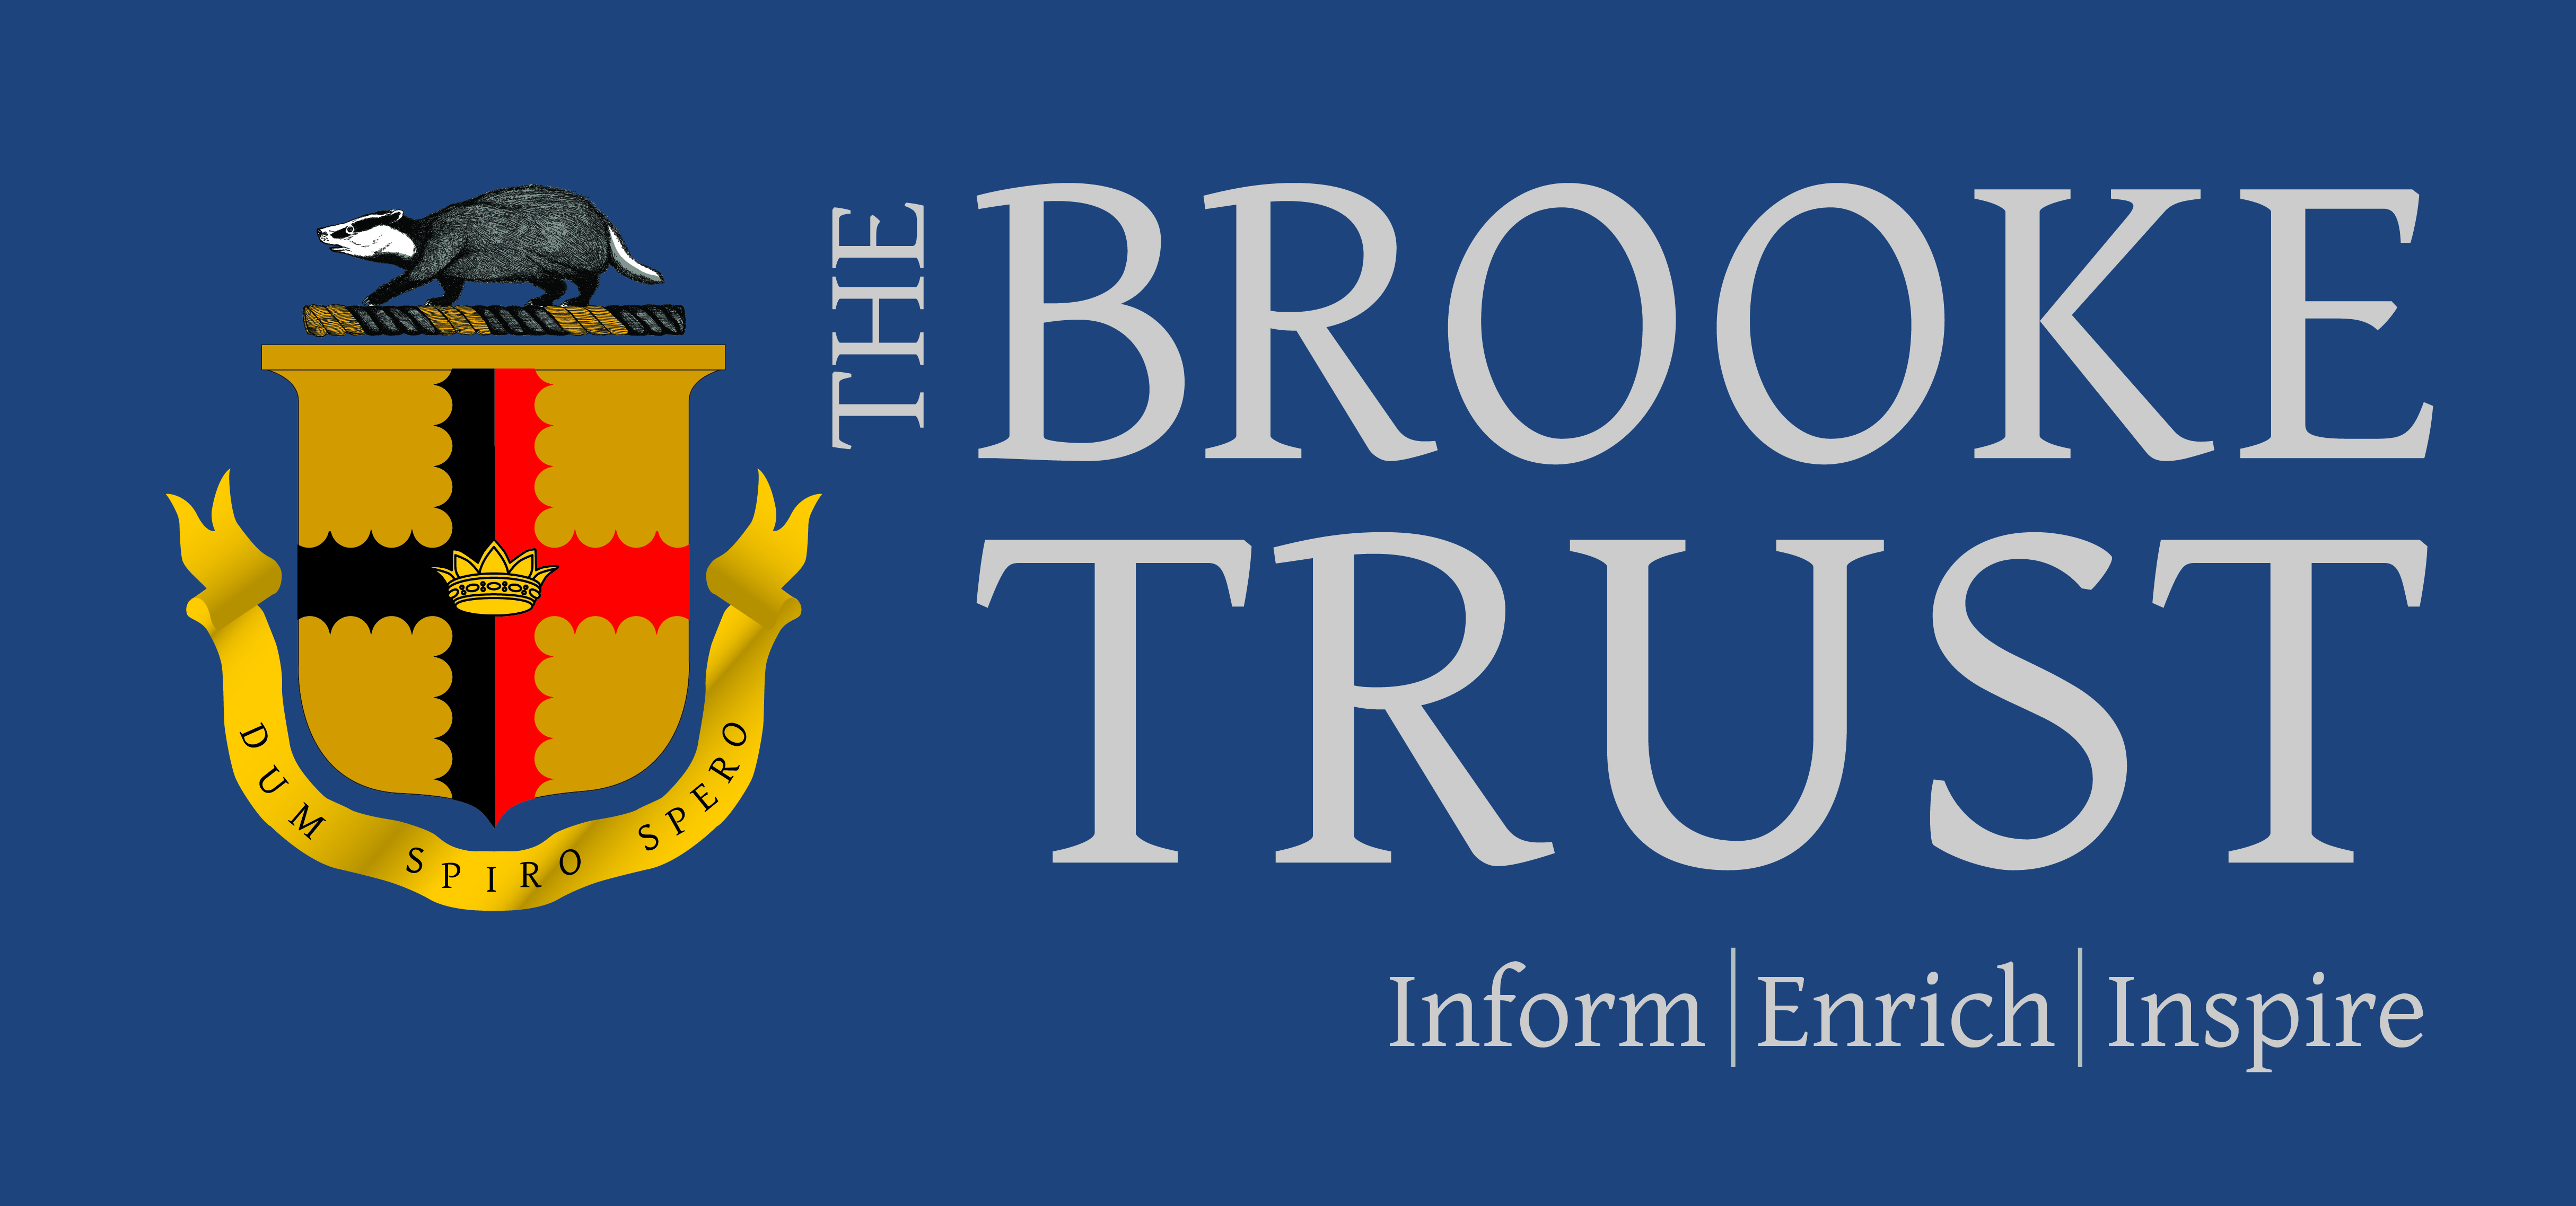 The Brooke Trust is established